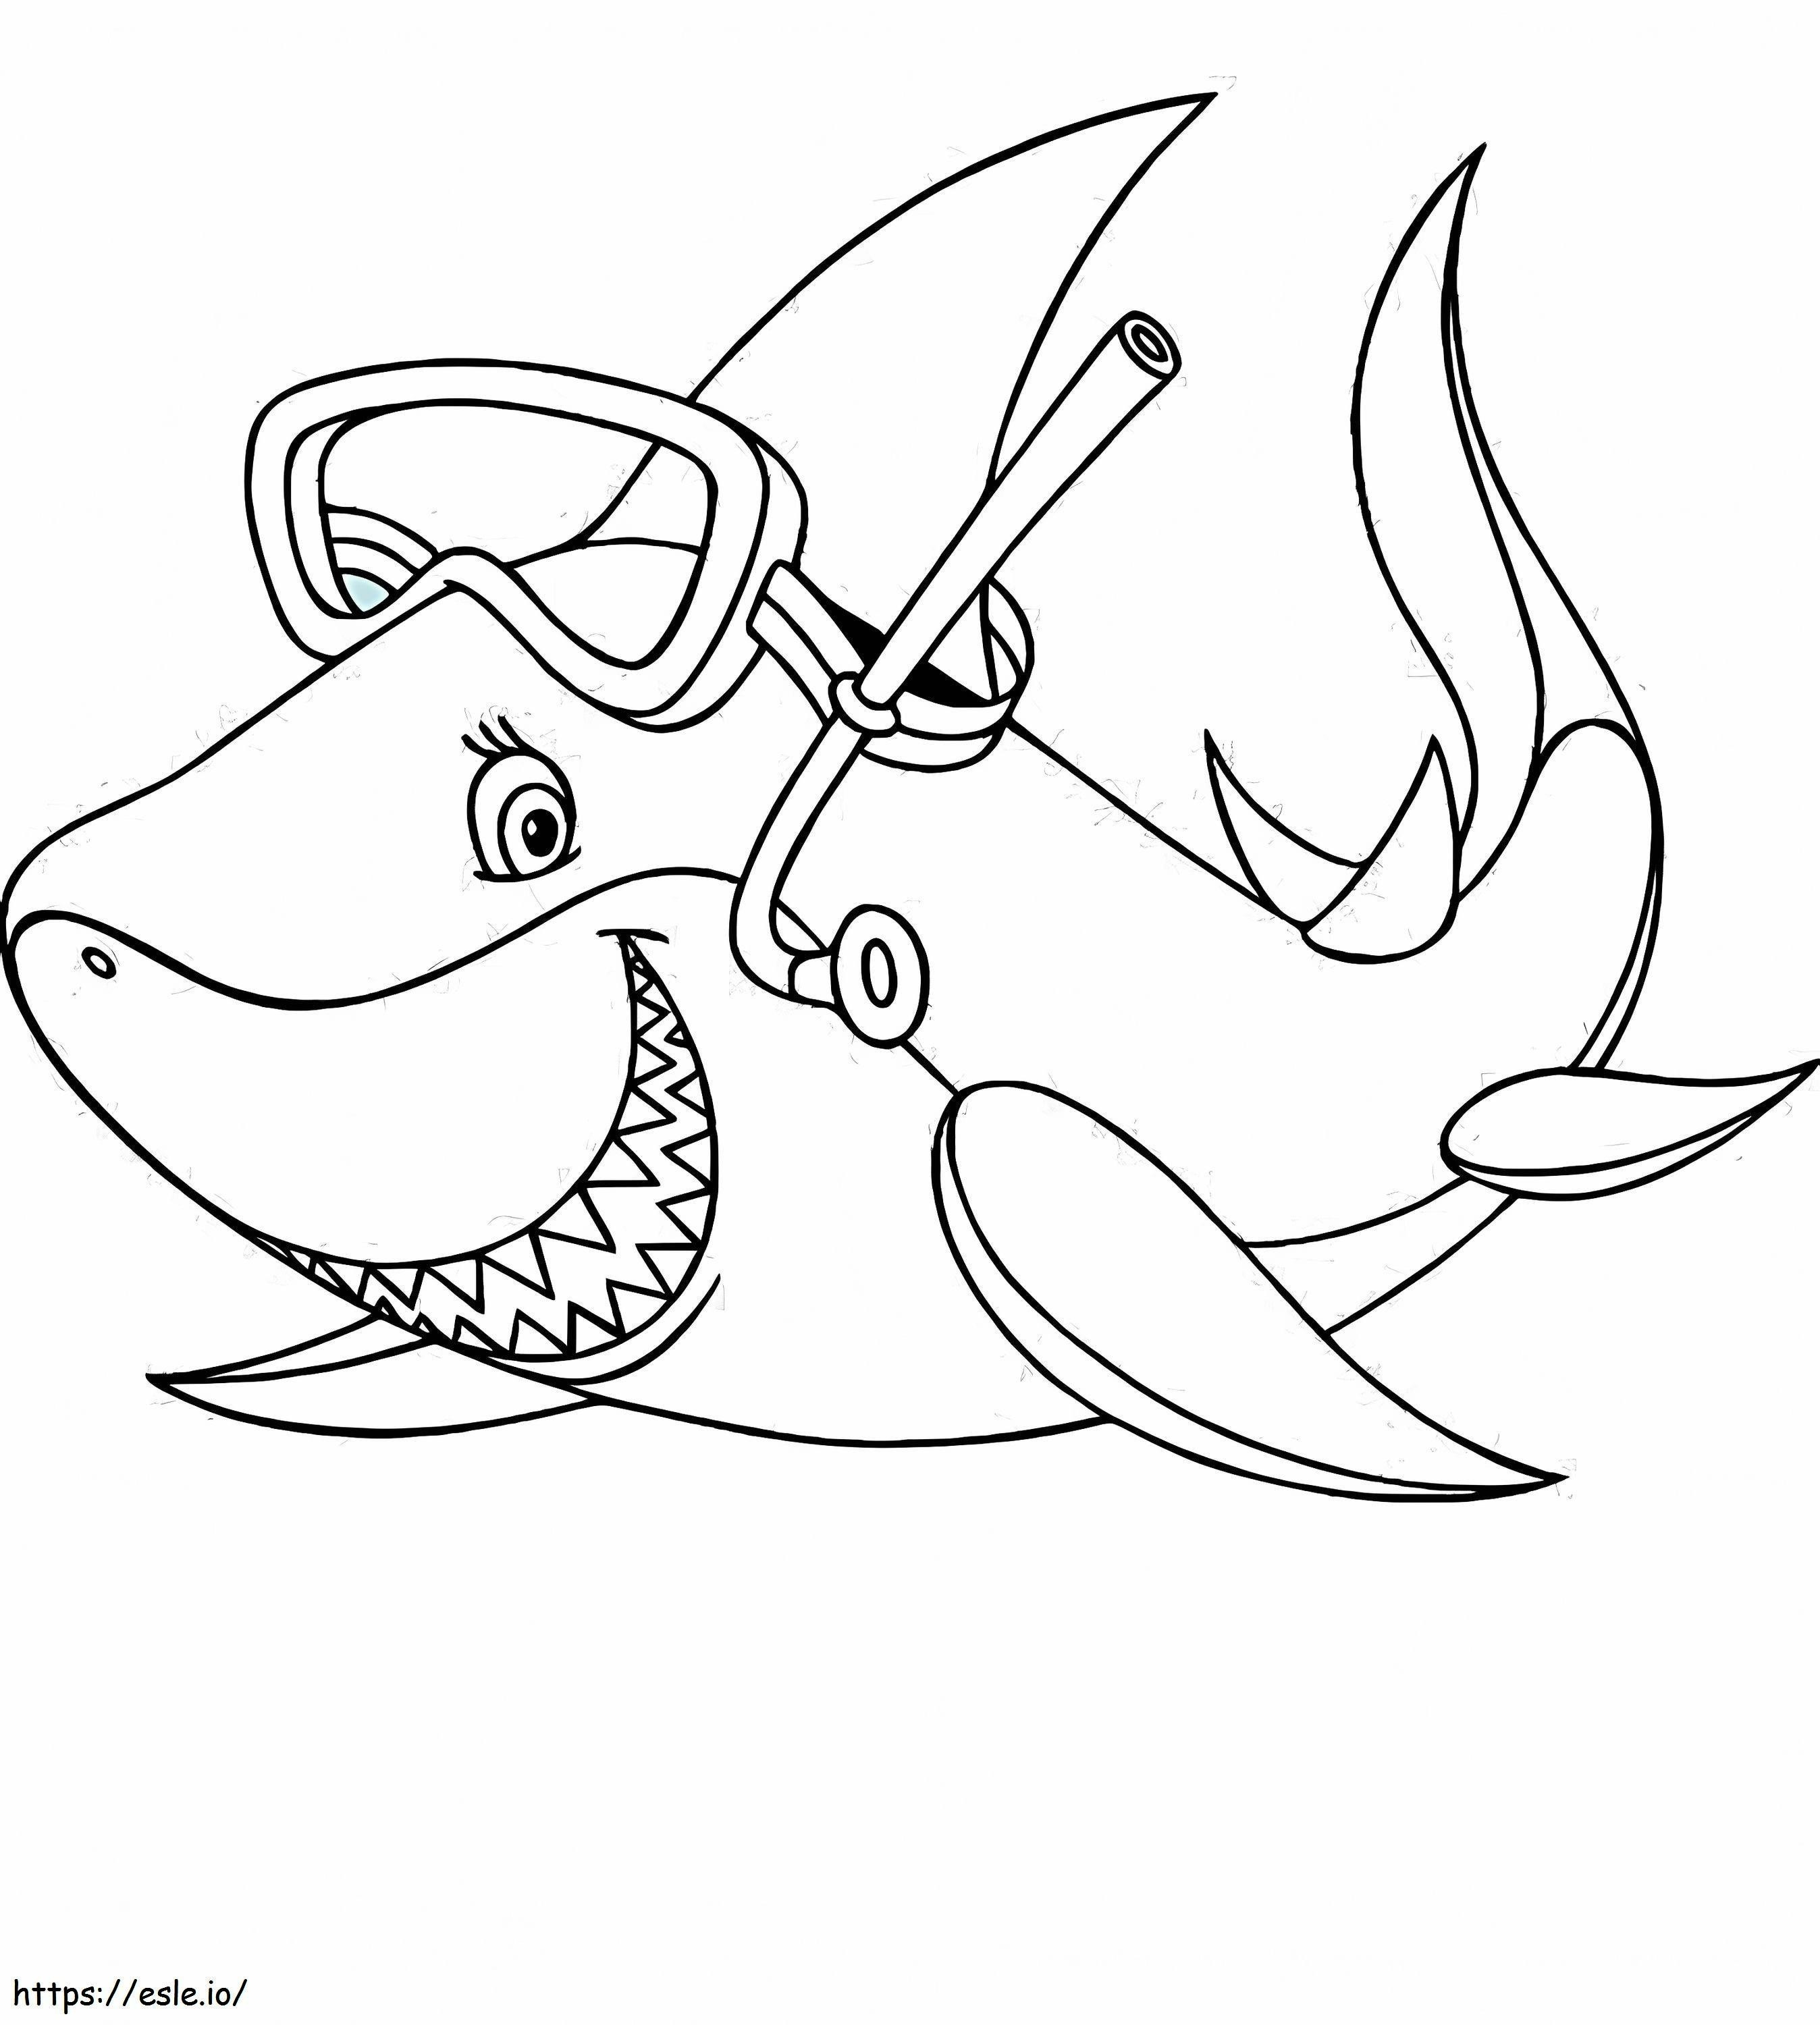 Coloriage 1541748815_Coloriage d'un requin Nouveau requin d'un requin à imprimer dessin